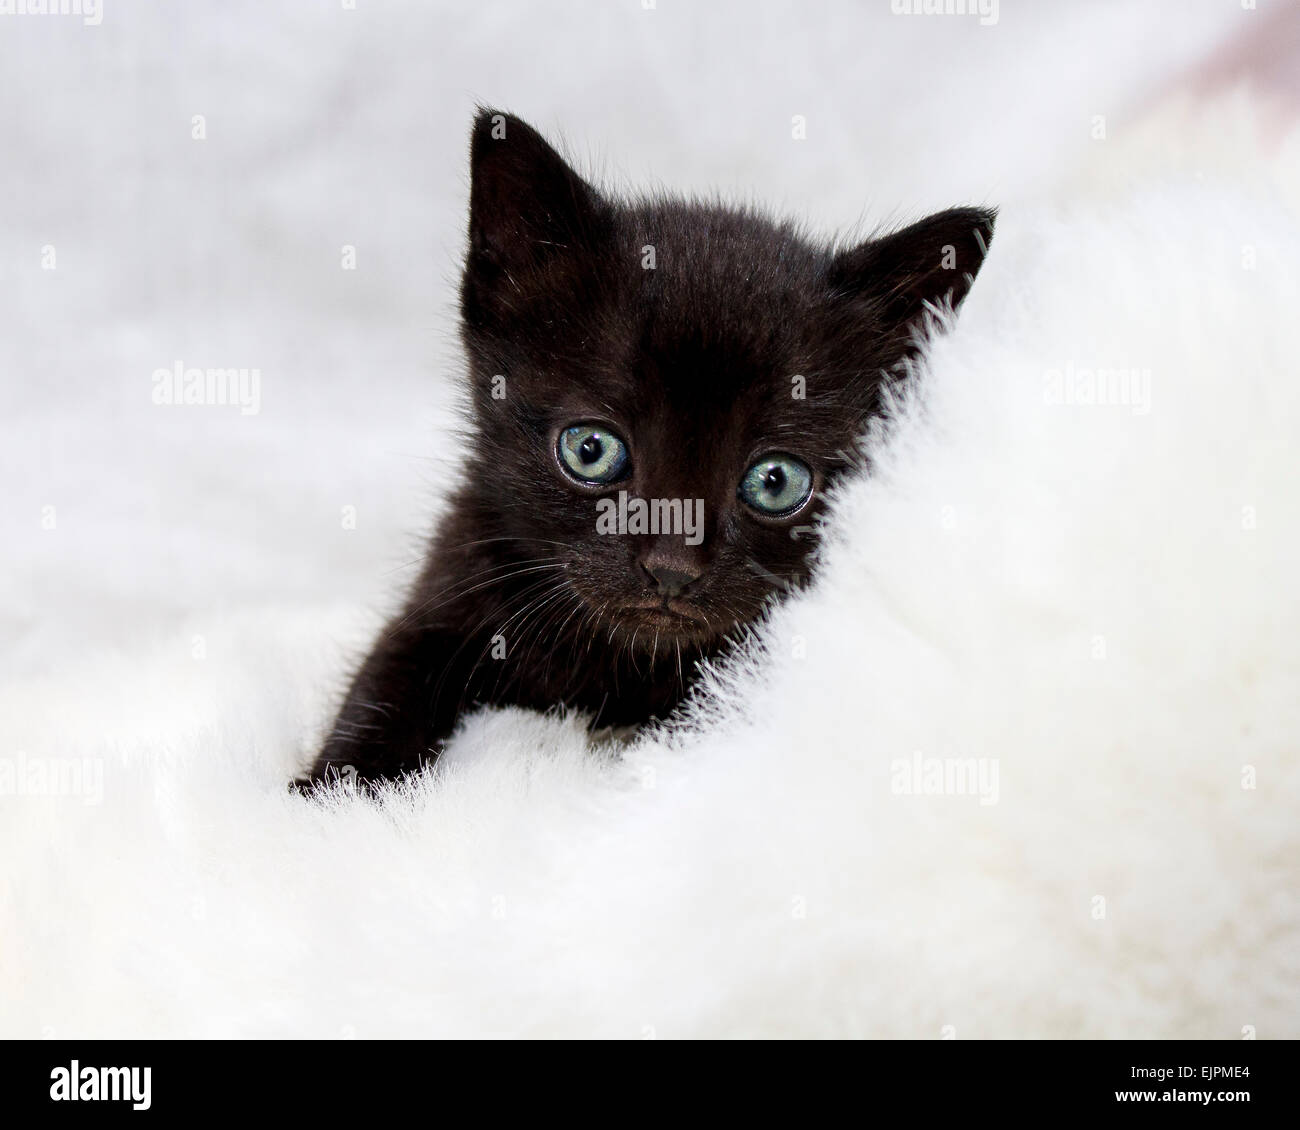 Niedliche 2 Wochen altes schwarzes Kätzchen mit groß grün blaue Augen und Schnurrhaare auf weißem Fell Stockfoto